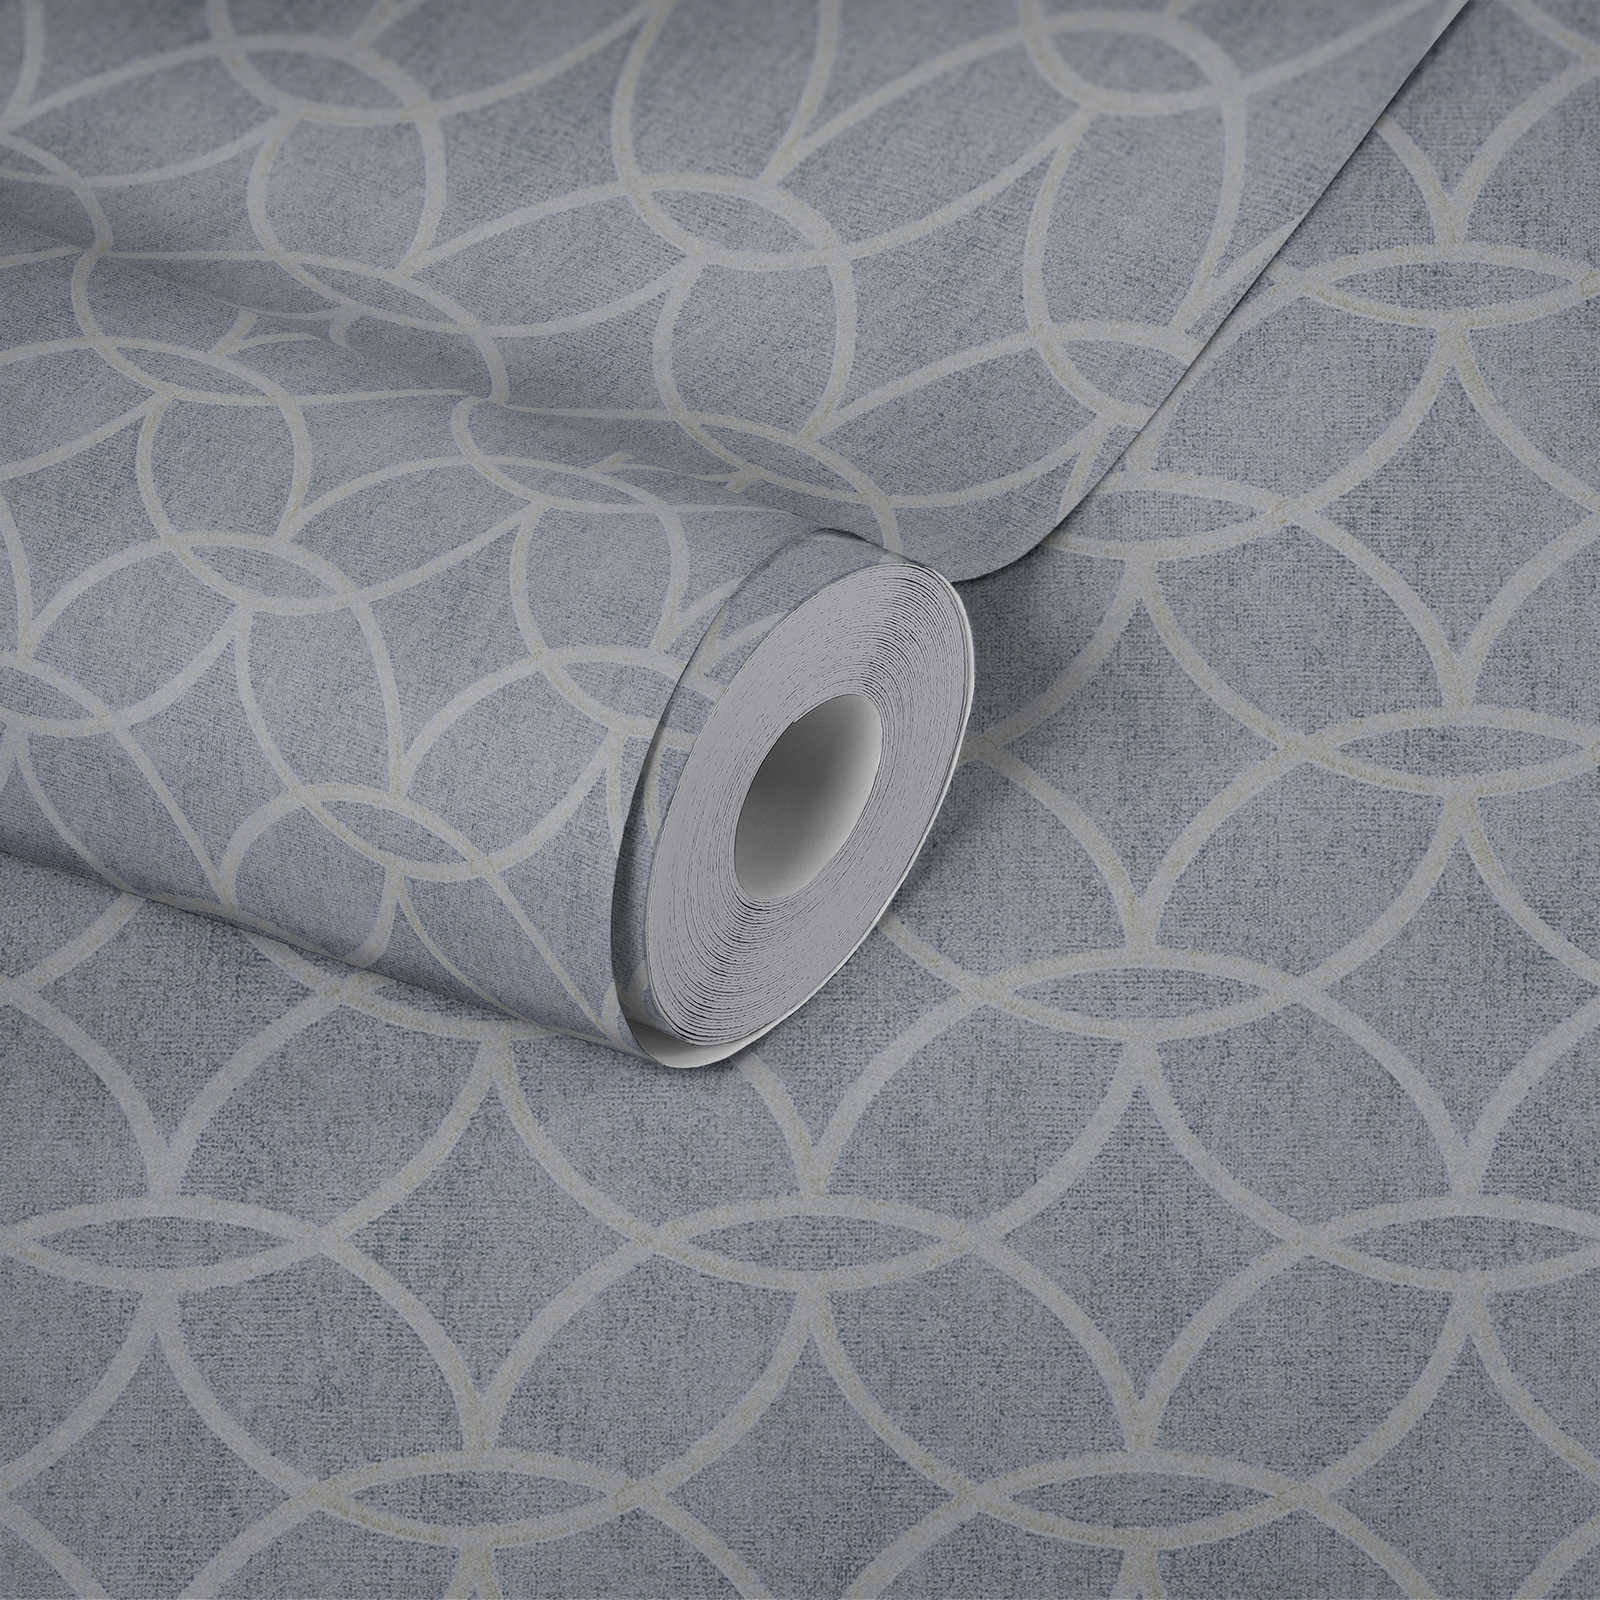             Mustertapete Vlies mit geometrischem Design & Schimmer-Effekt – Blau, Grau
        